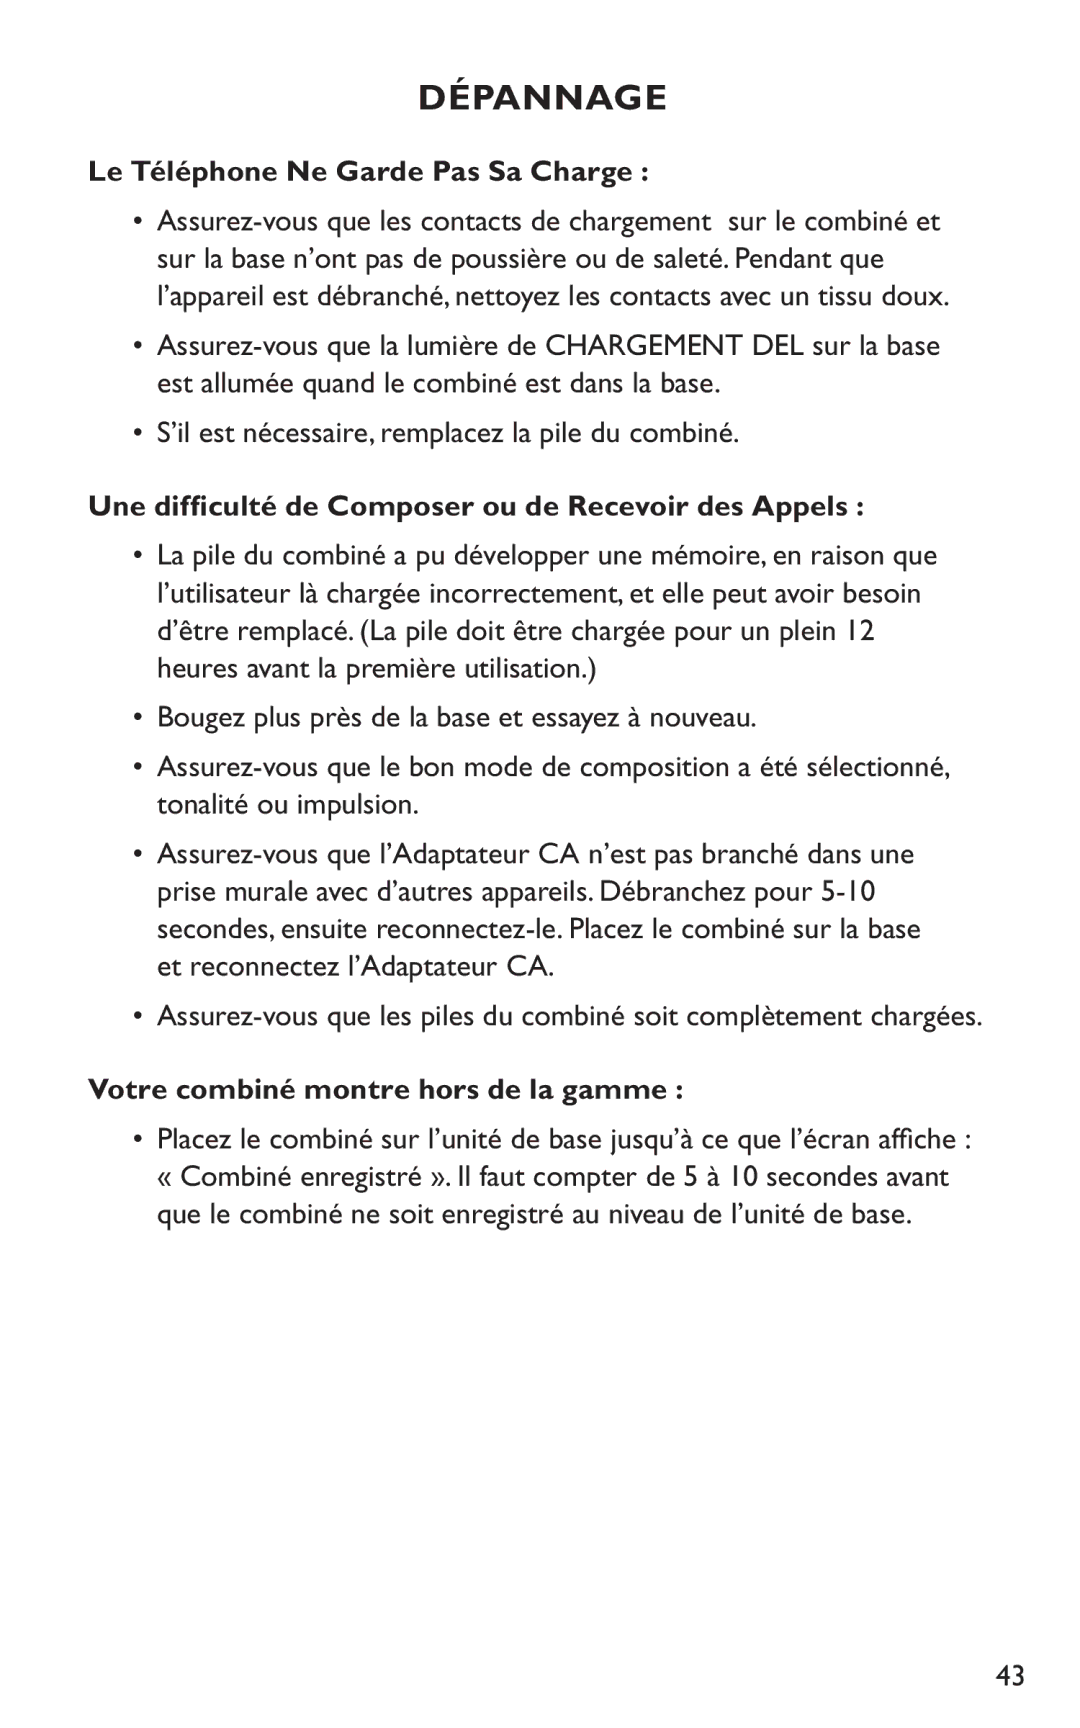 Clarity C4230HS manual Le Téléphone Ne Garde Pas Sa Charge, Une difﬁculté de Composer ou de Recevoir des Appels 